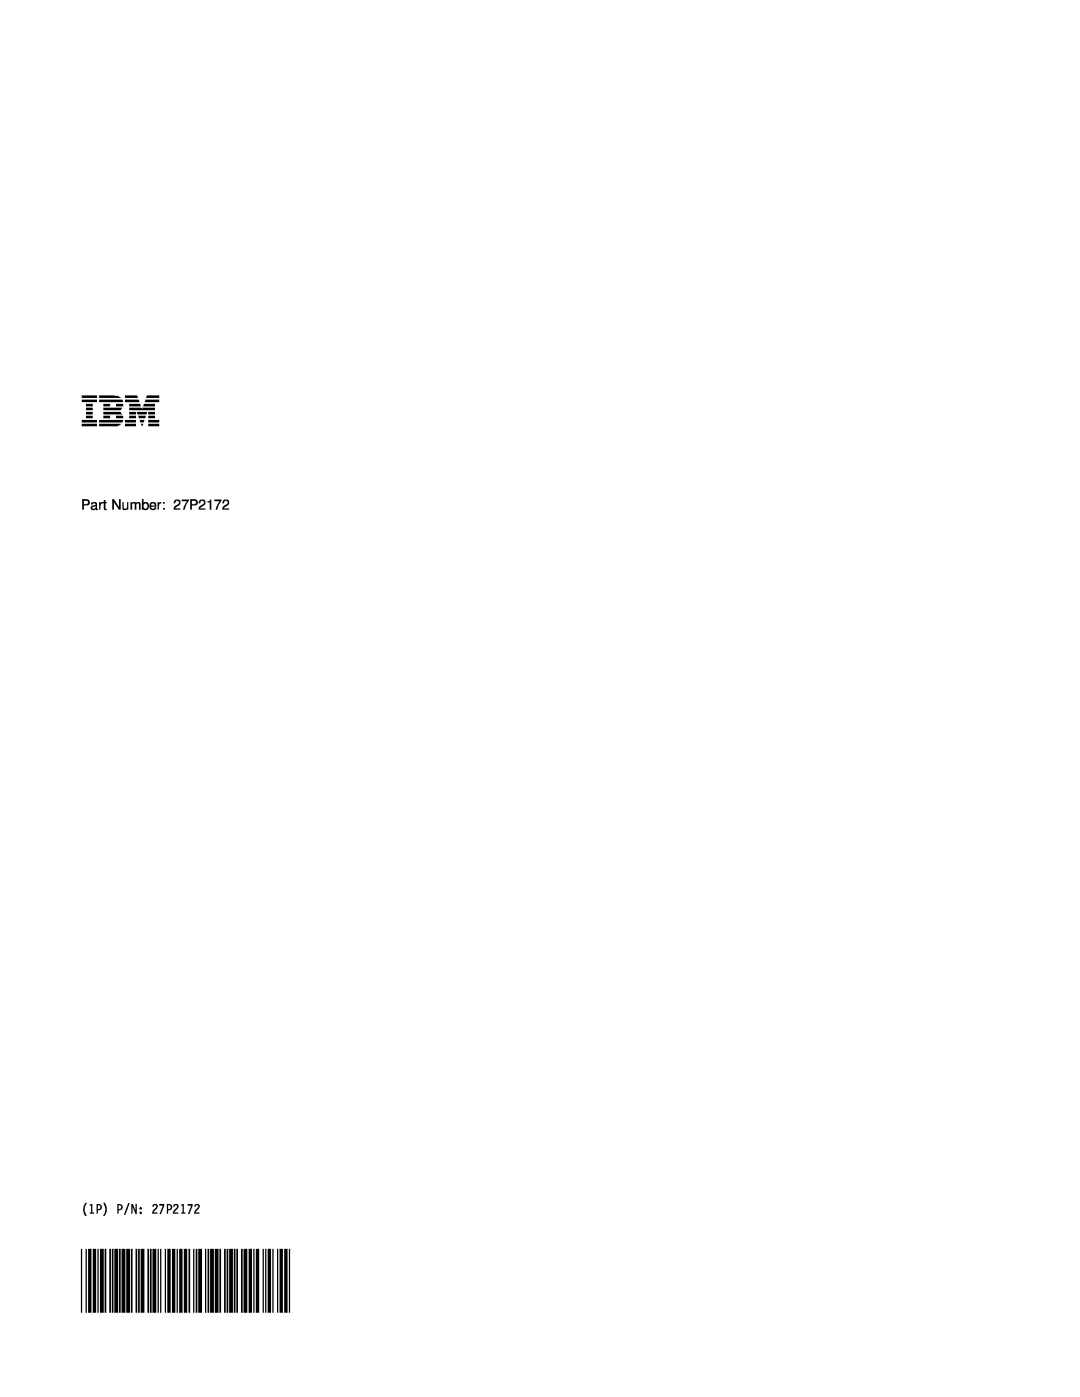 IBM A22 manual Part Number 27P2172, 1P P/N 27P2172 